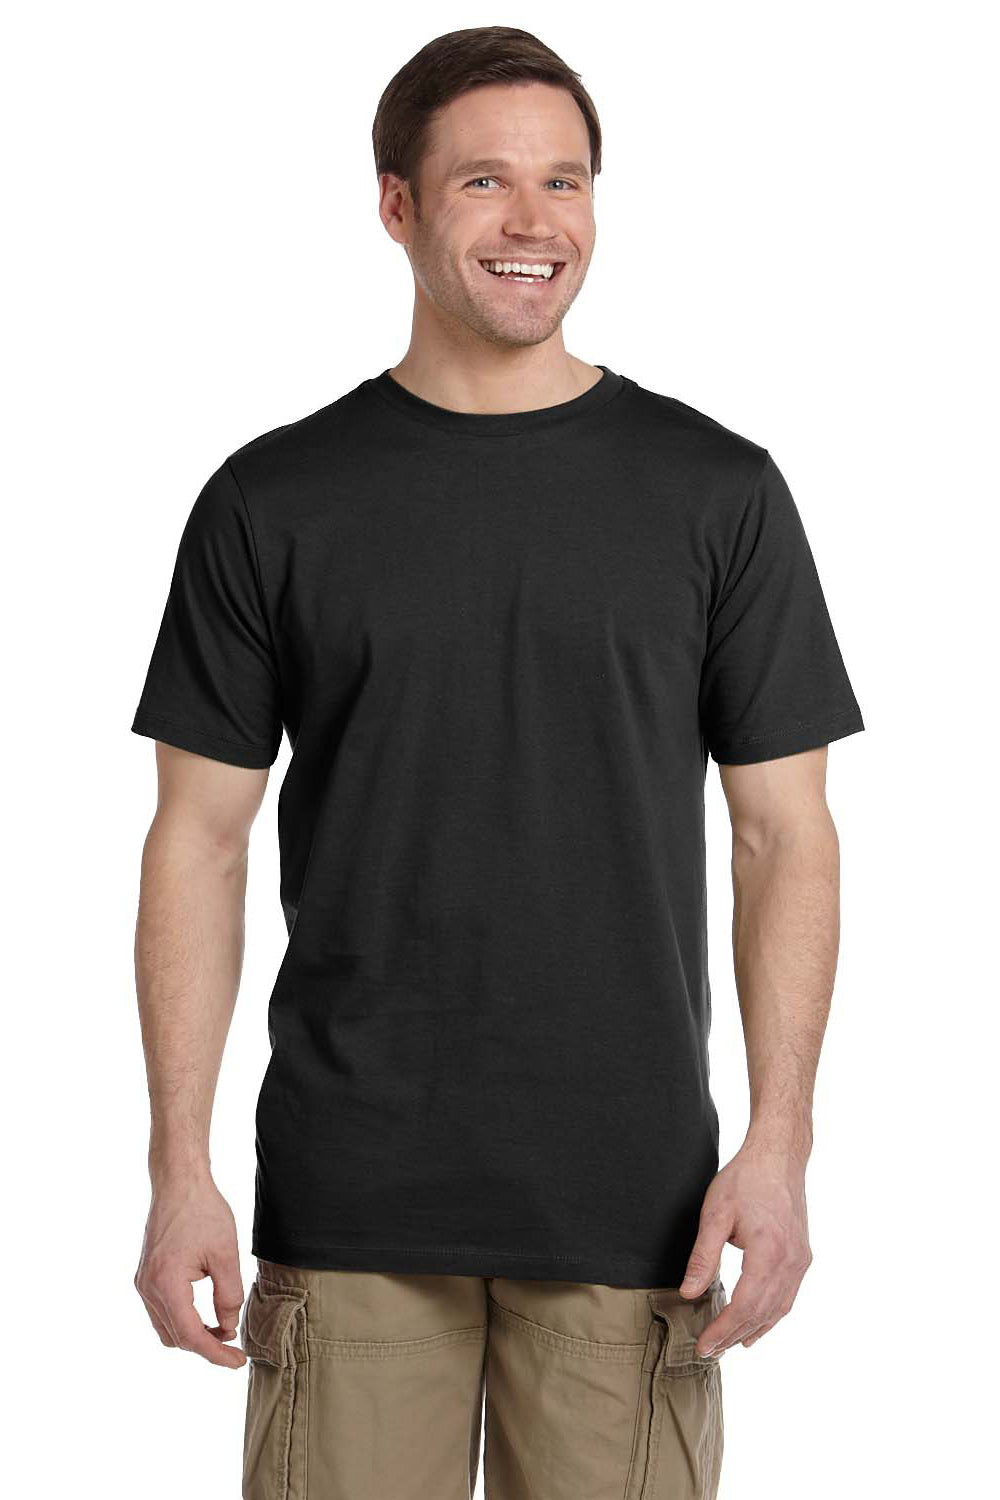 Econscious EC1075 Mens Short Sleeve Crewneck T-Shirt Black Front